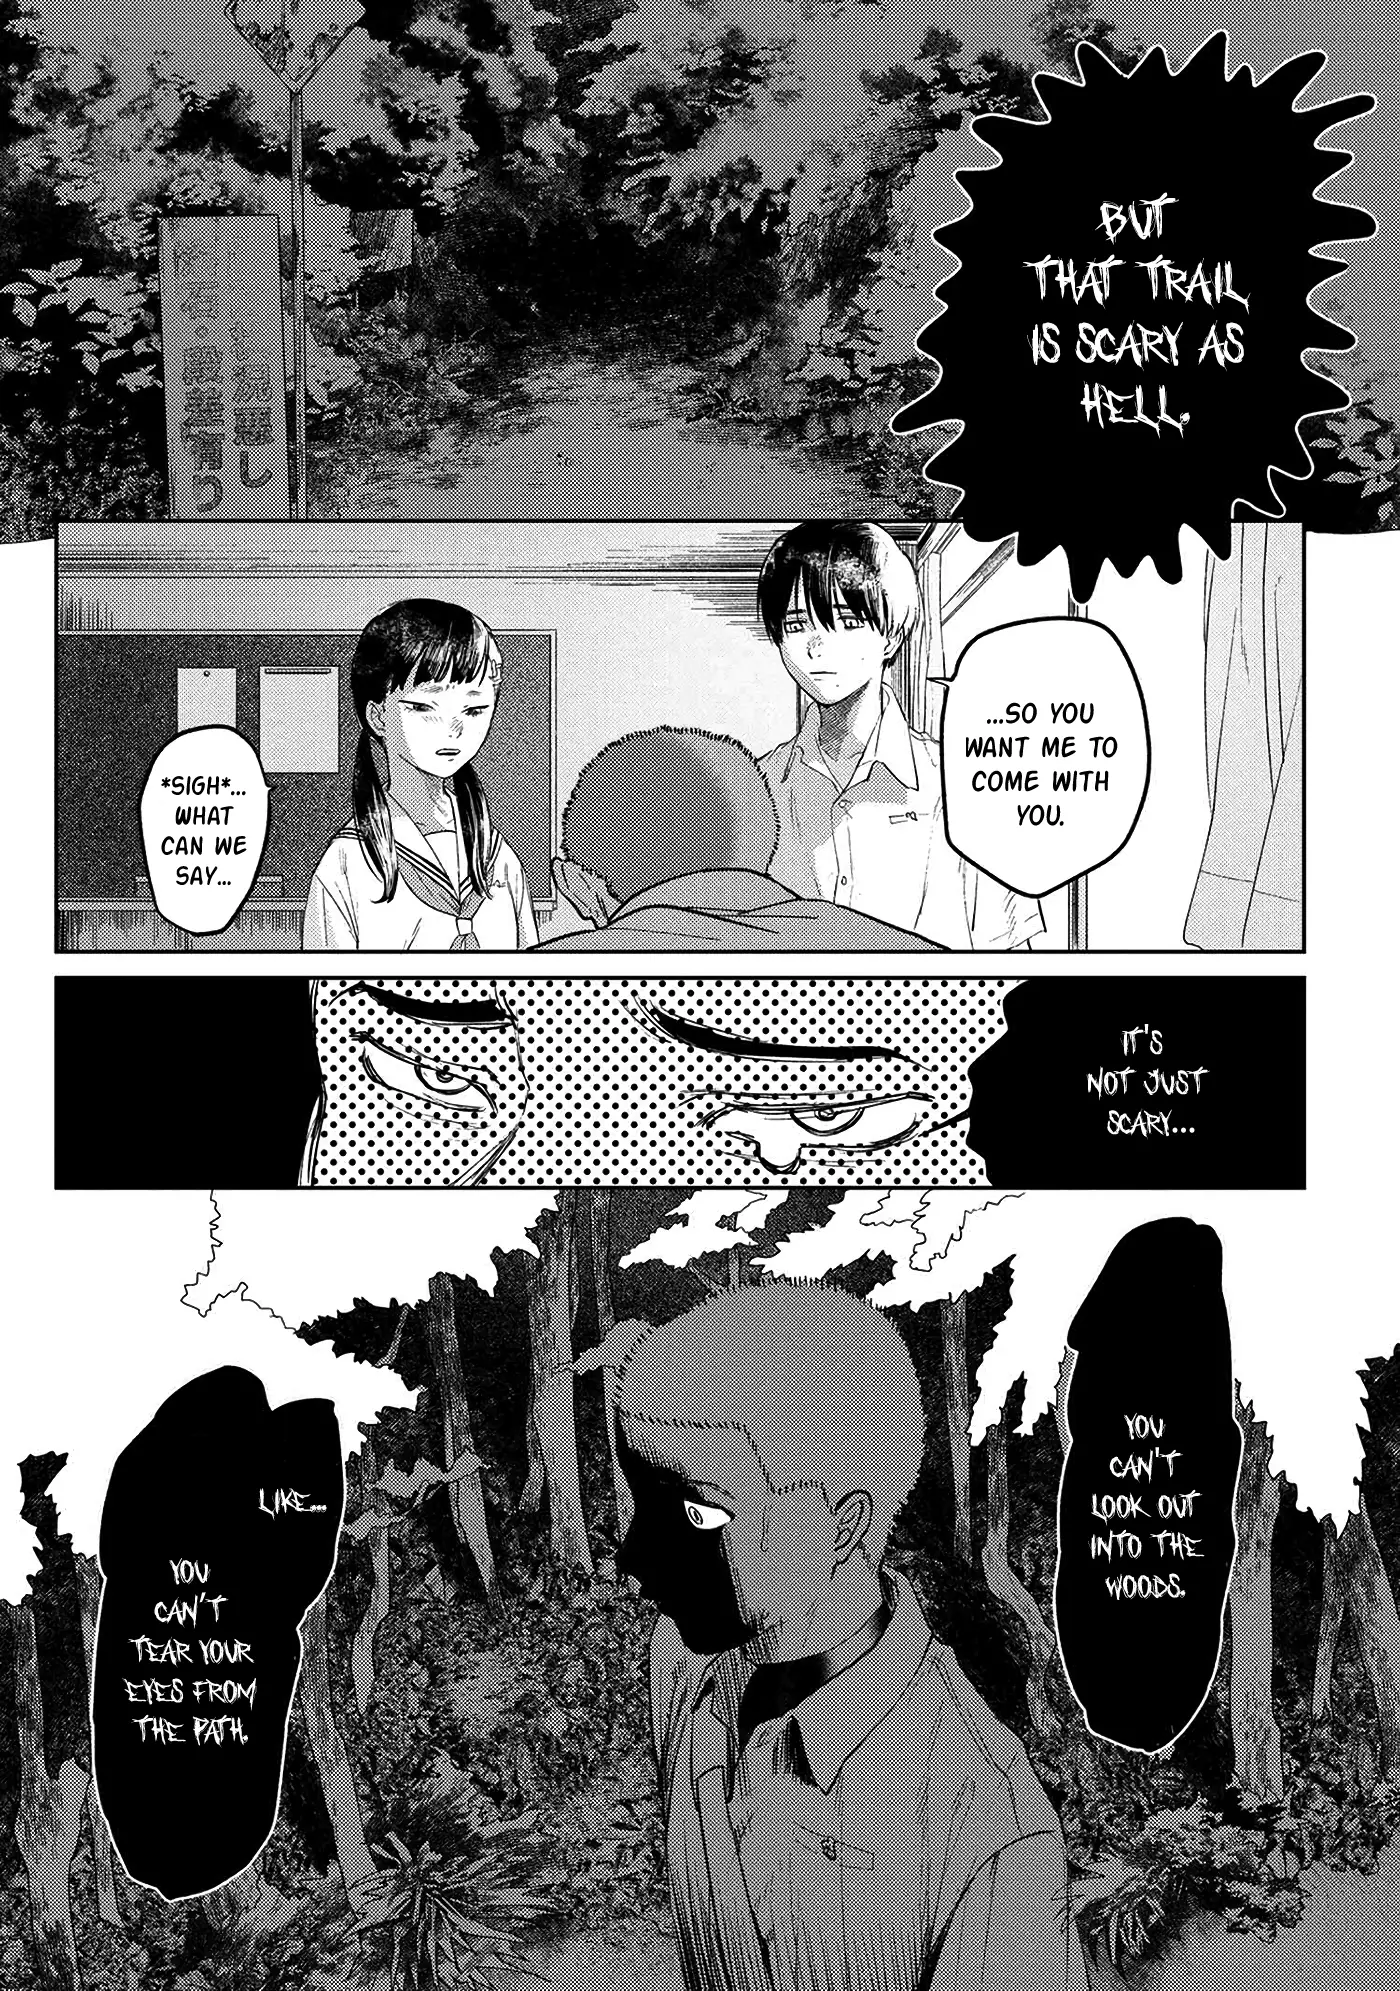 Hikaru Ga Shinda Natsu - 3 page 6-41ea5eed